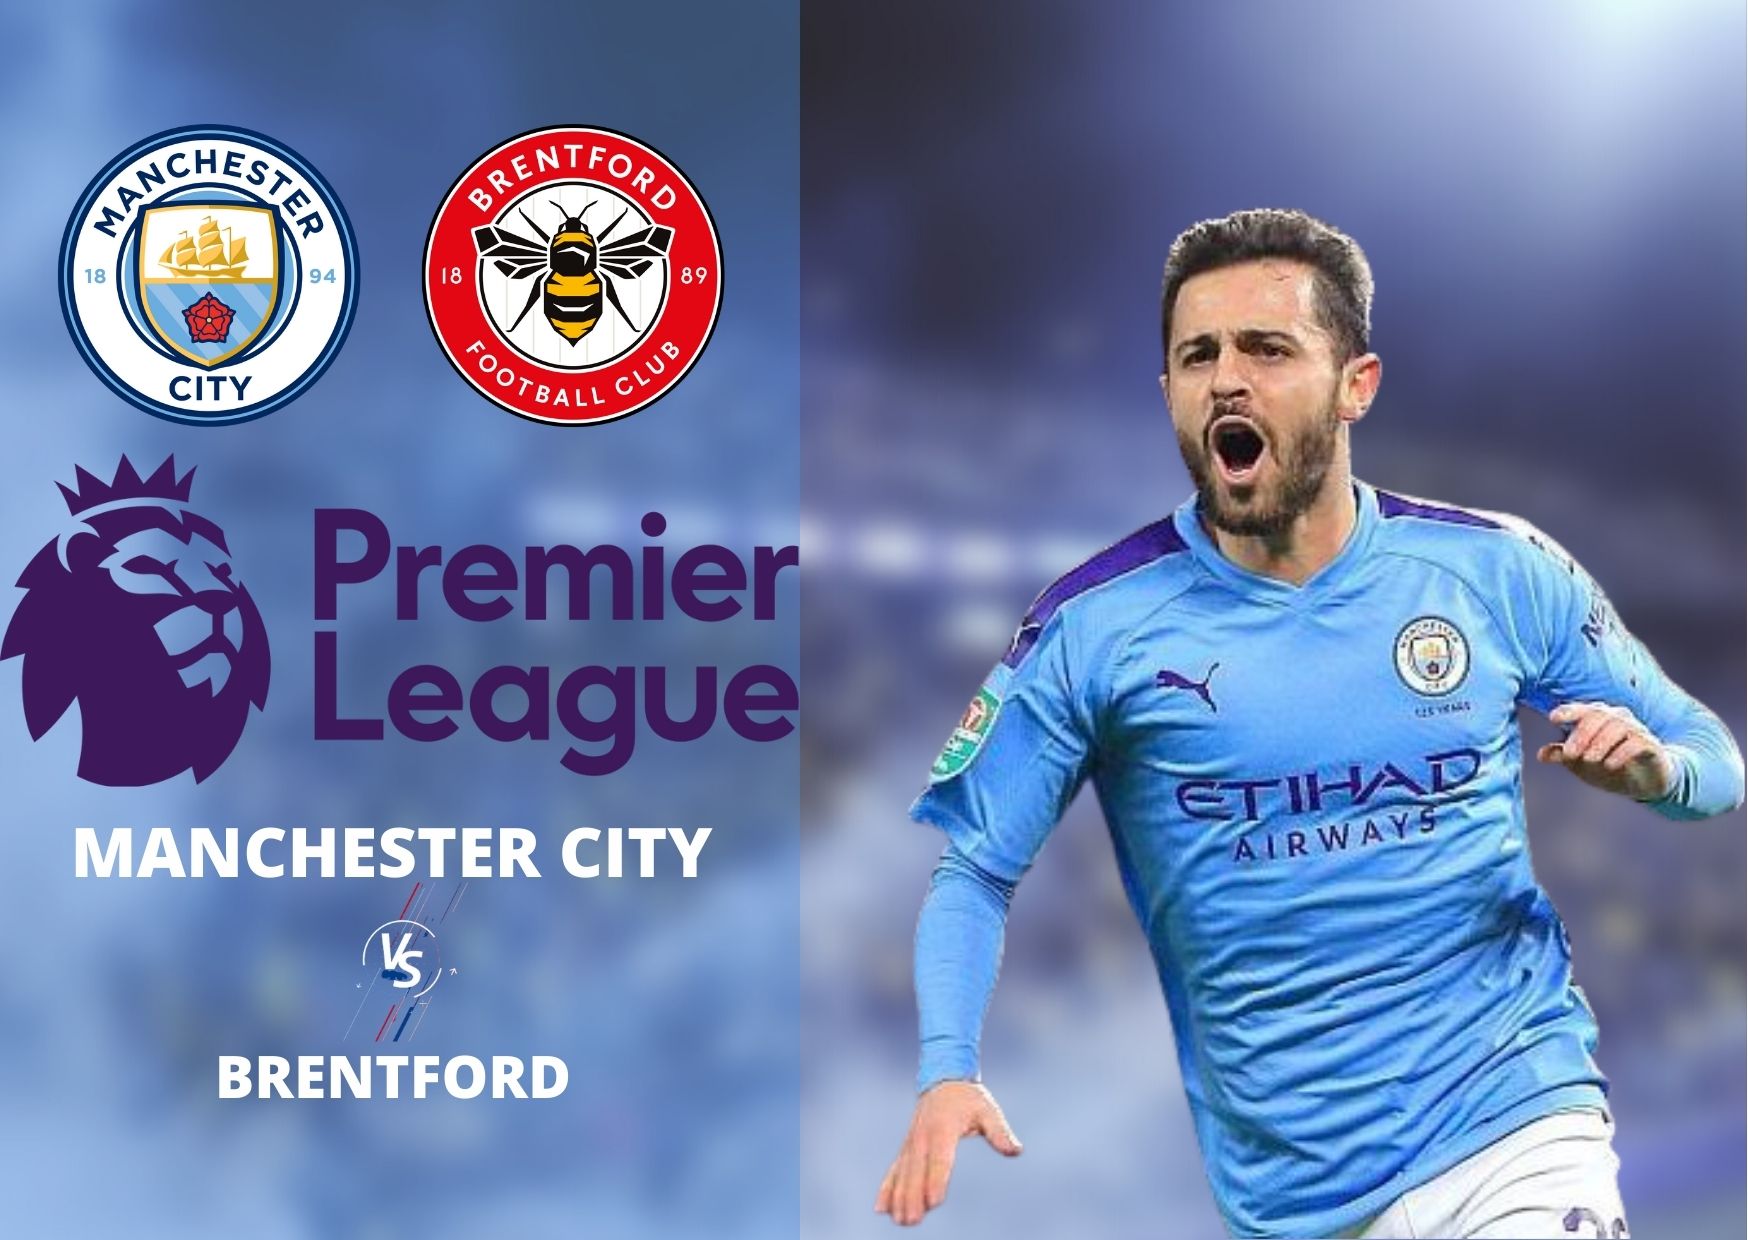 Simak Link Live Streaming Manchester City vs Brentford yang akan digelar di Stadion Etihad pada Kamis, 10 Februari 2022.